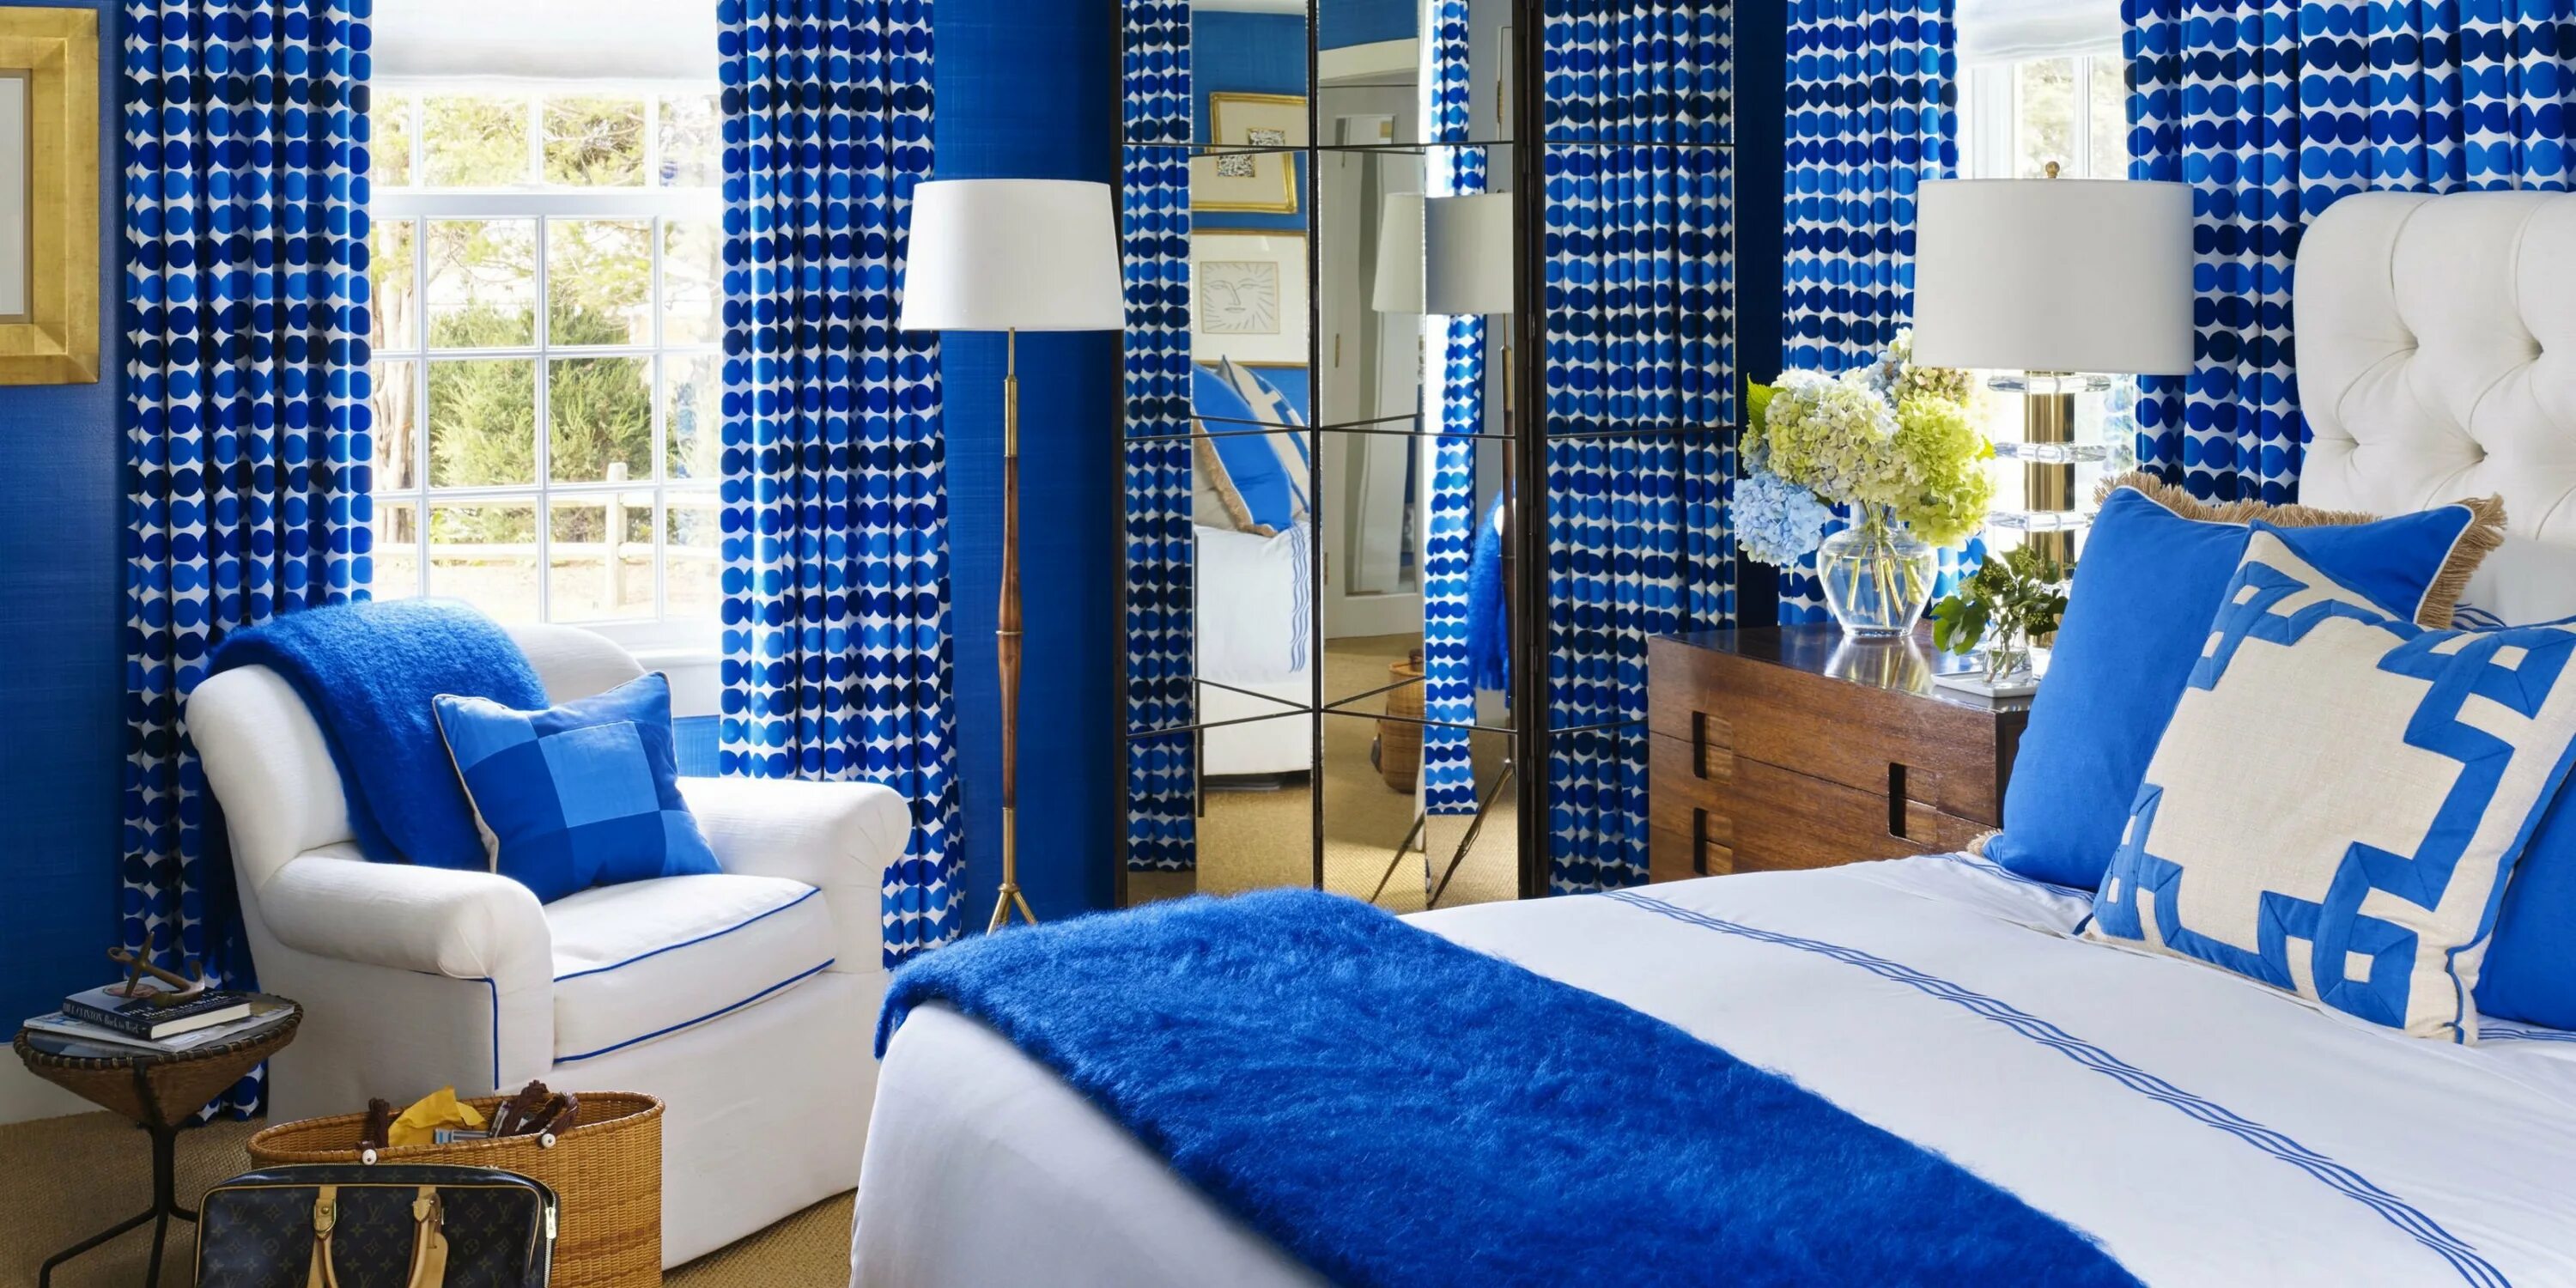 Где живут синие. Спальня в синих тонах. Спальня в сине белых тонах. Интерьер в синих тонах. Бело синяя спальня.